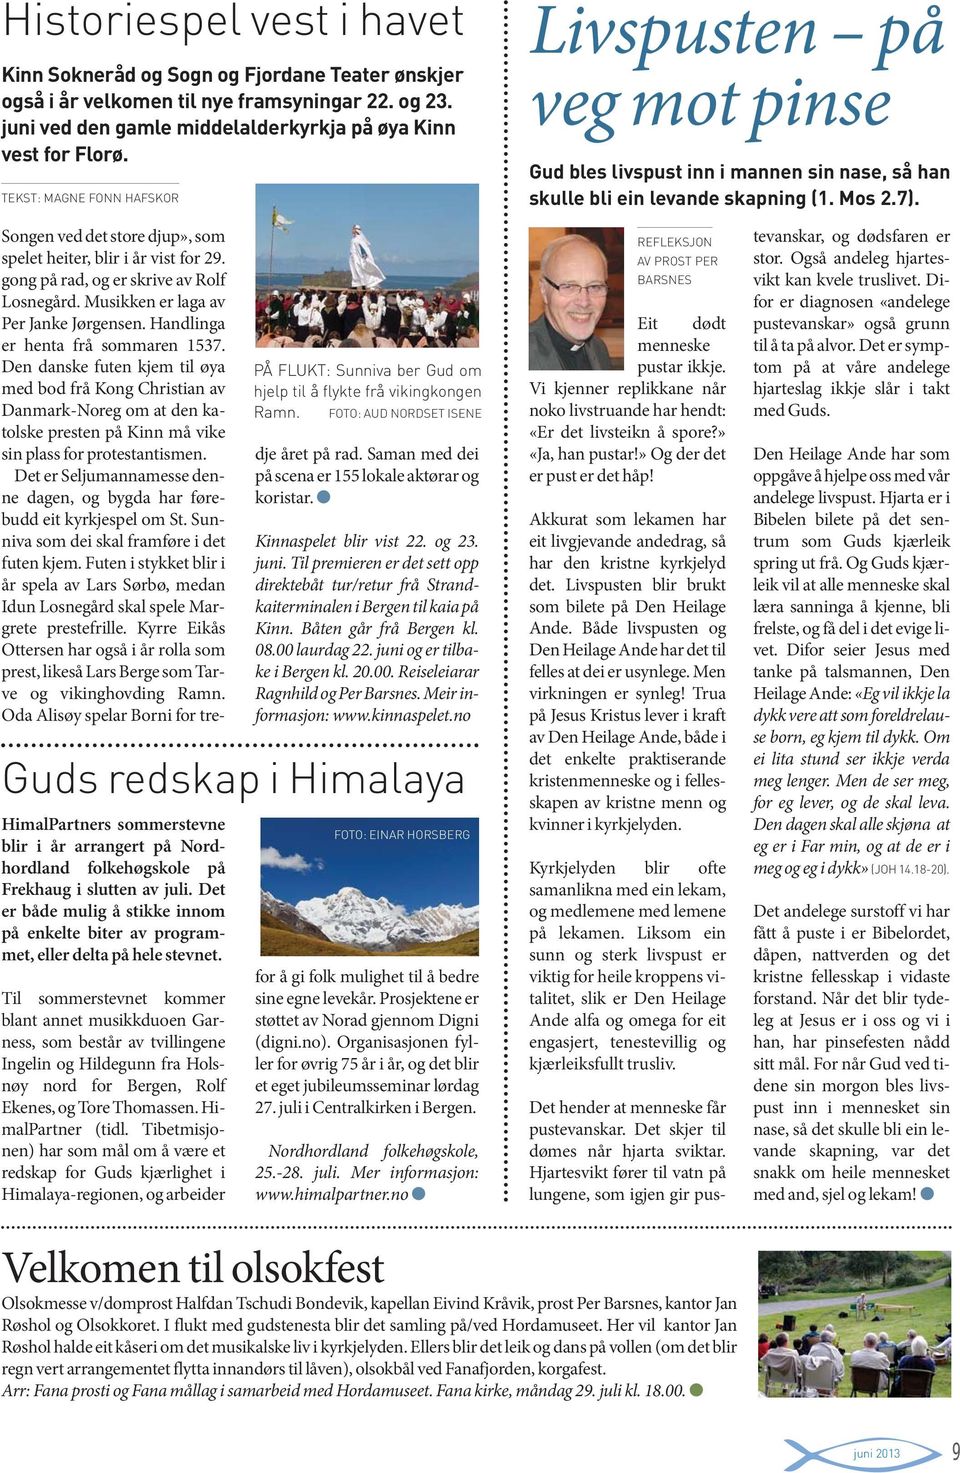 HimalPartners sommerstevne blir i år arrangert på Nordhordland folkehøgskole på Frekhaug i slutten av juli.